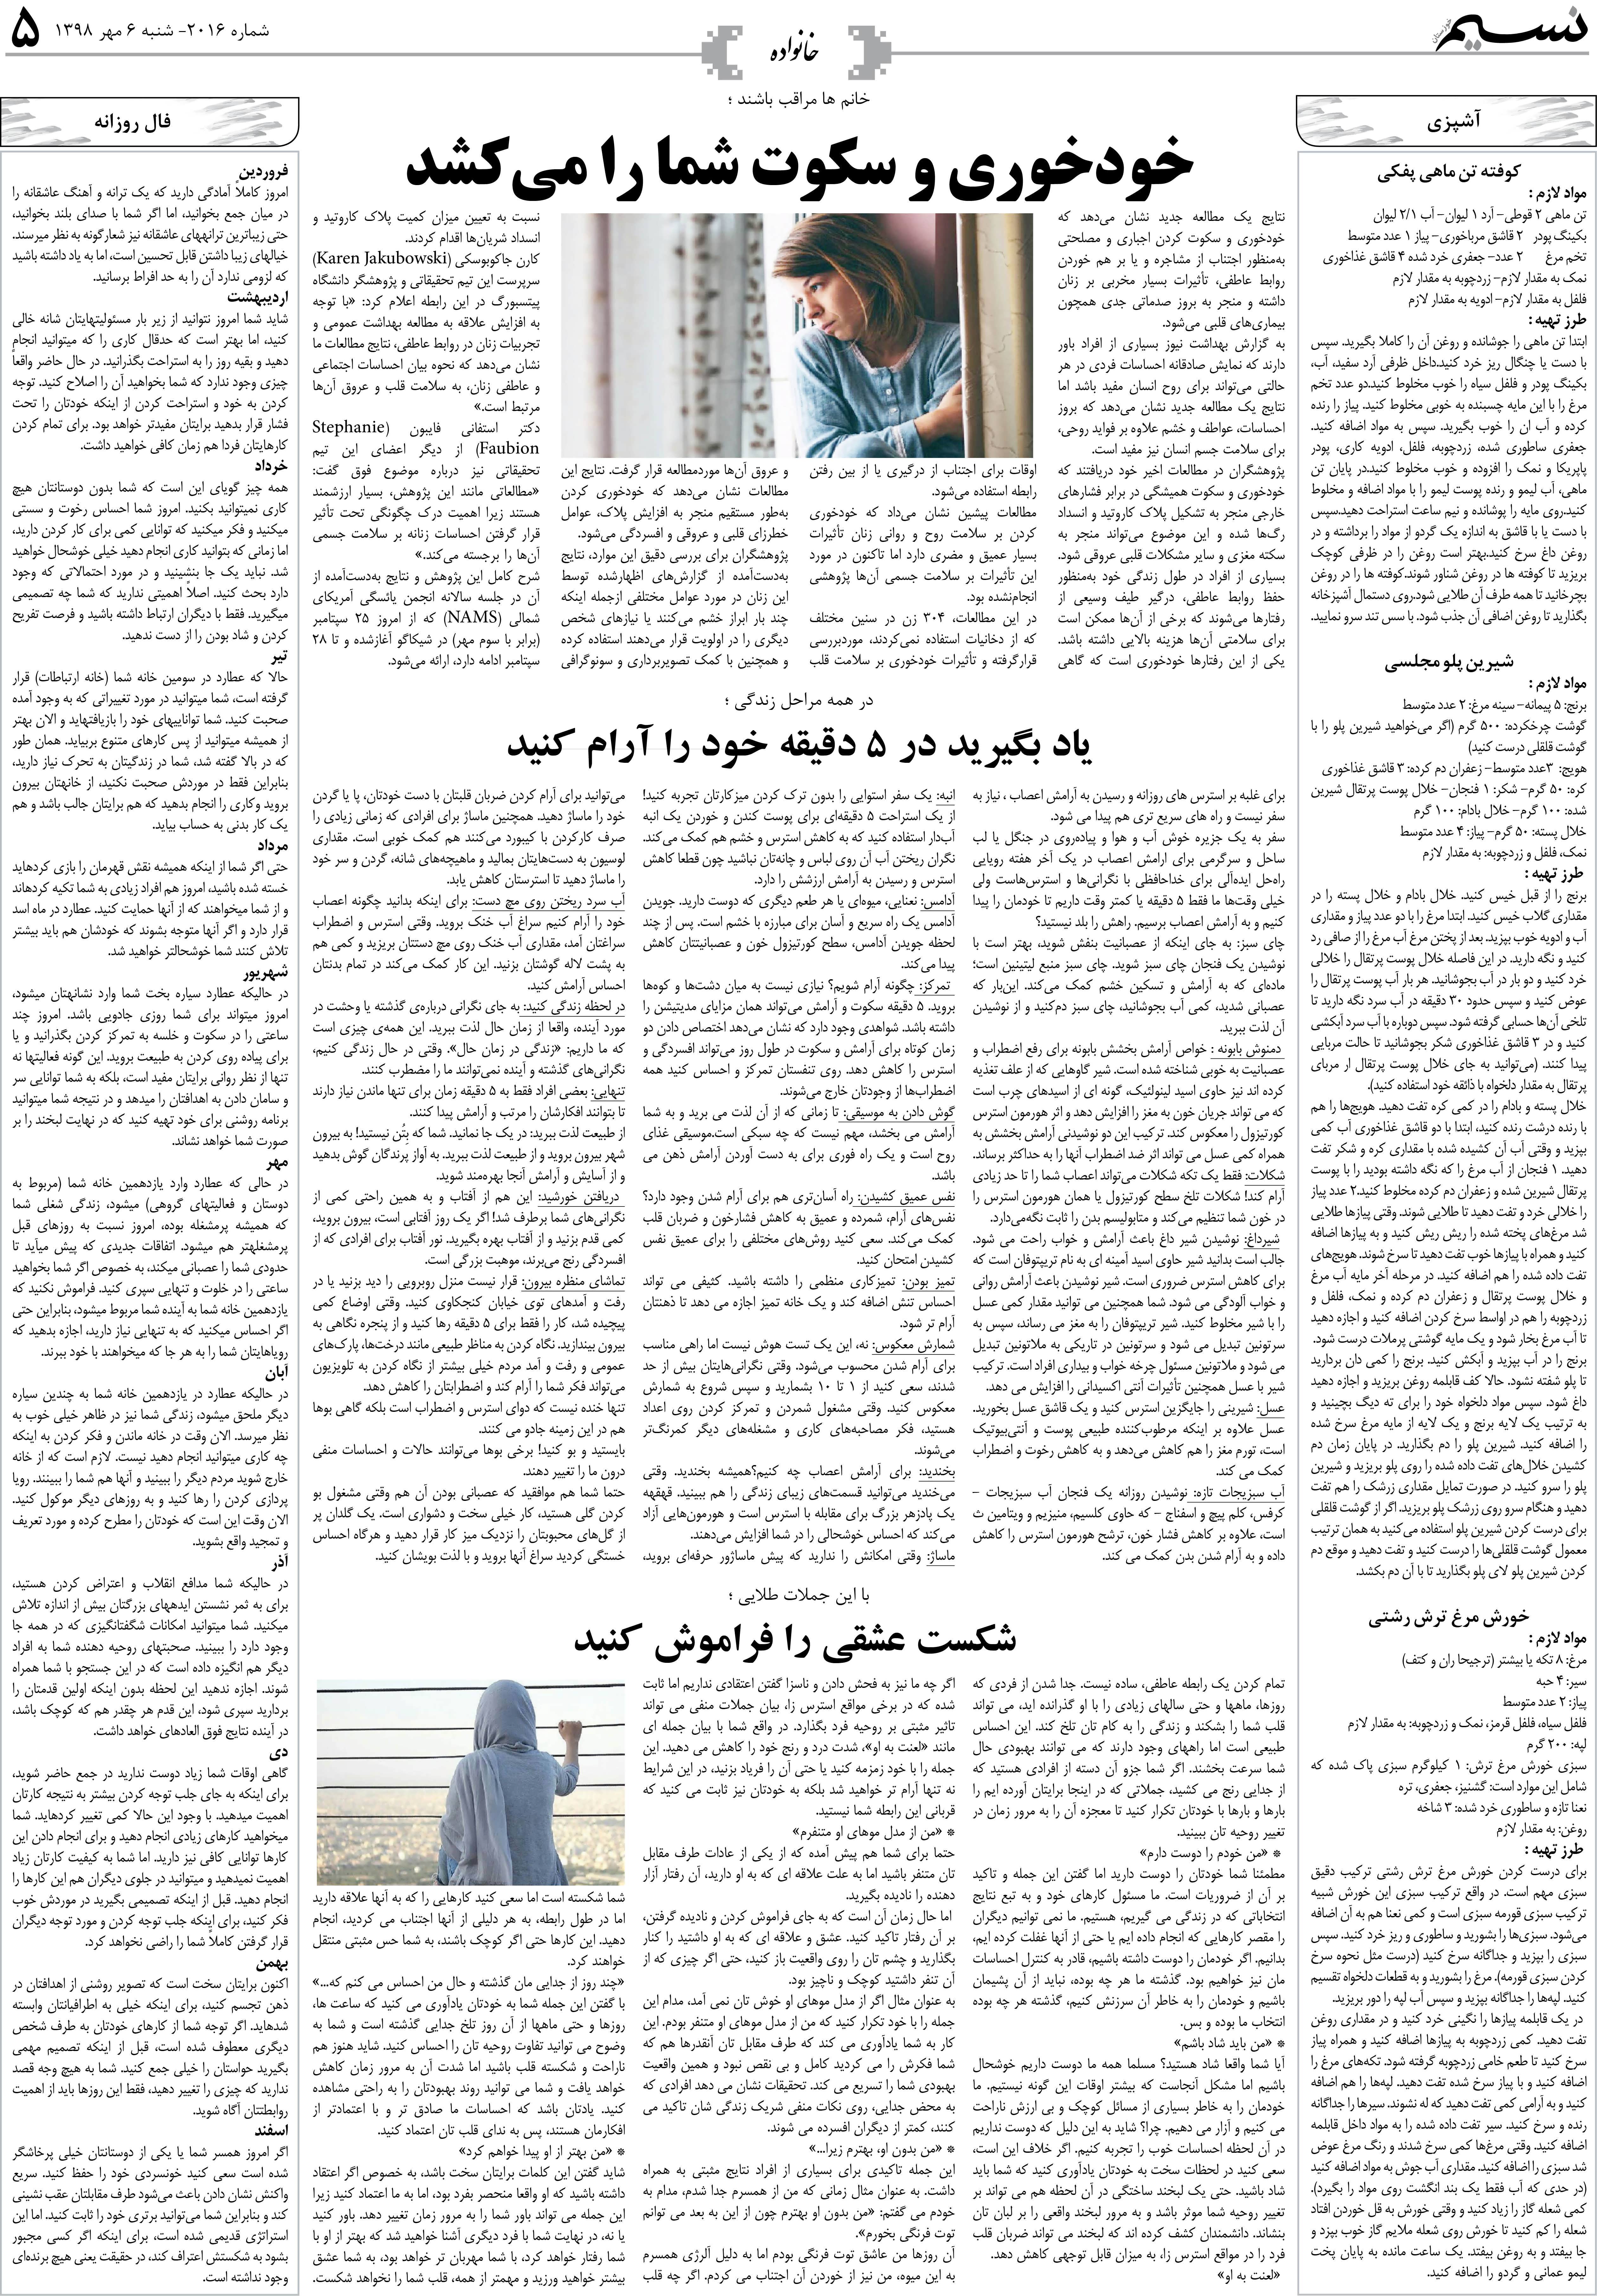 صفحه خانواده روزنامه نسیم شماره 2016